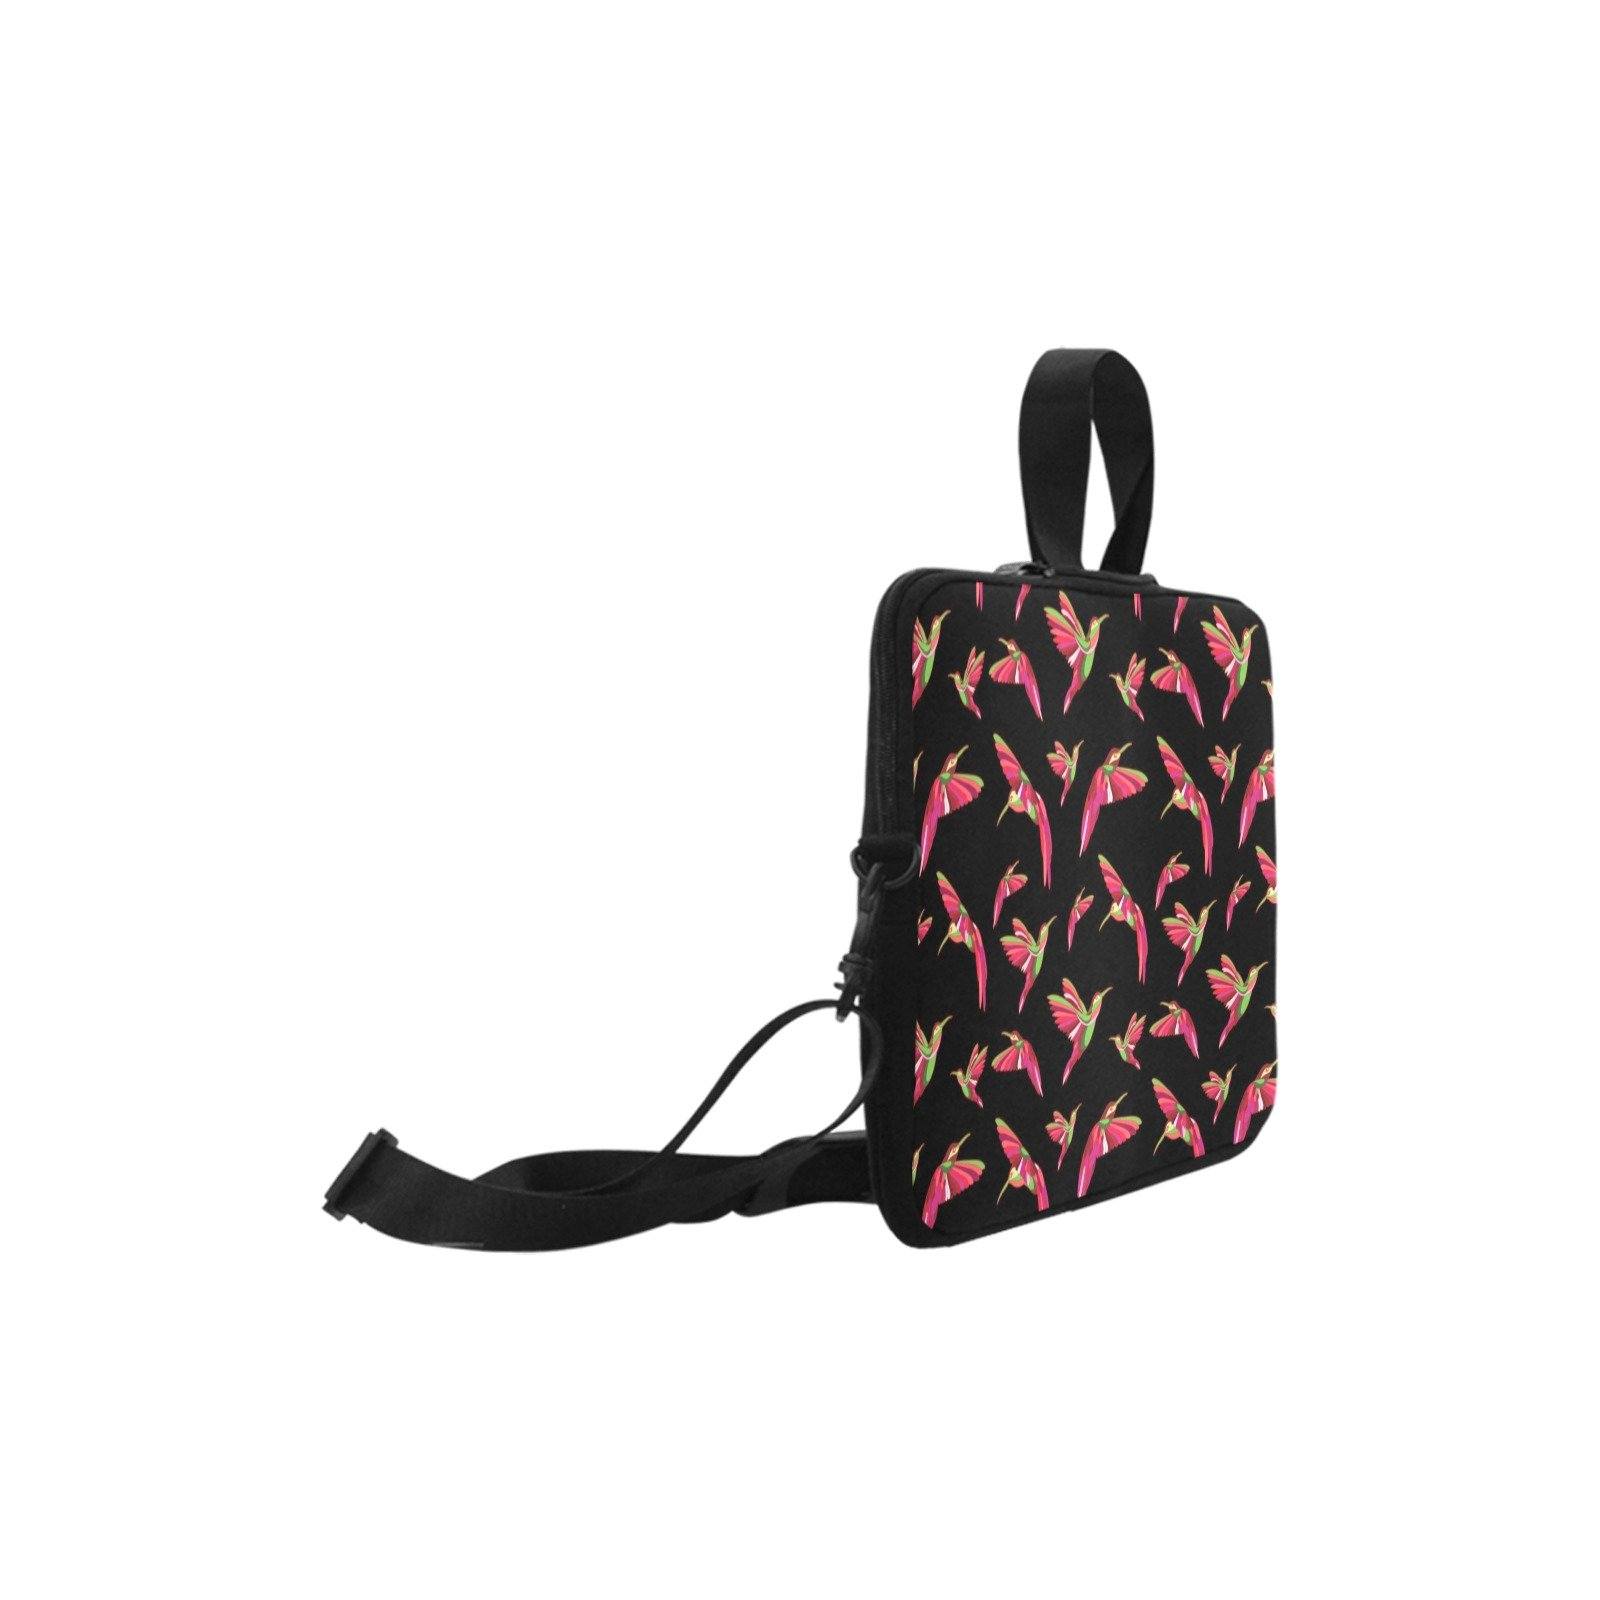 Red Swift Colourful Black Laptop Handbags 17" bag e-joyer 